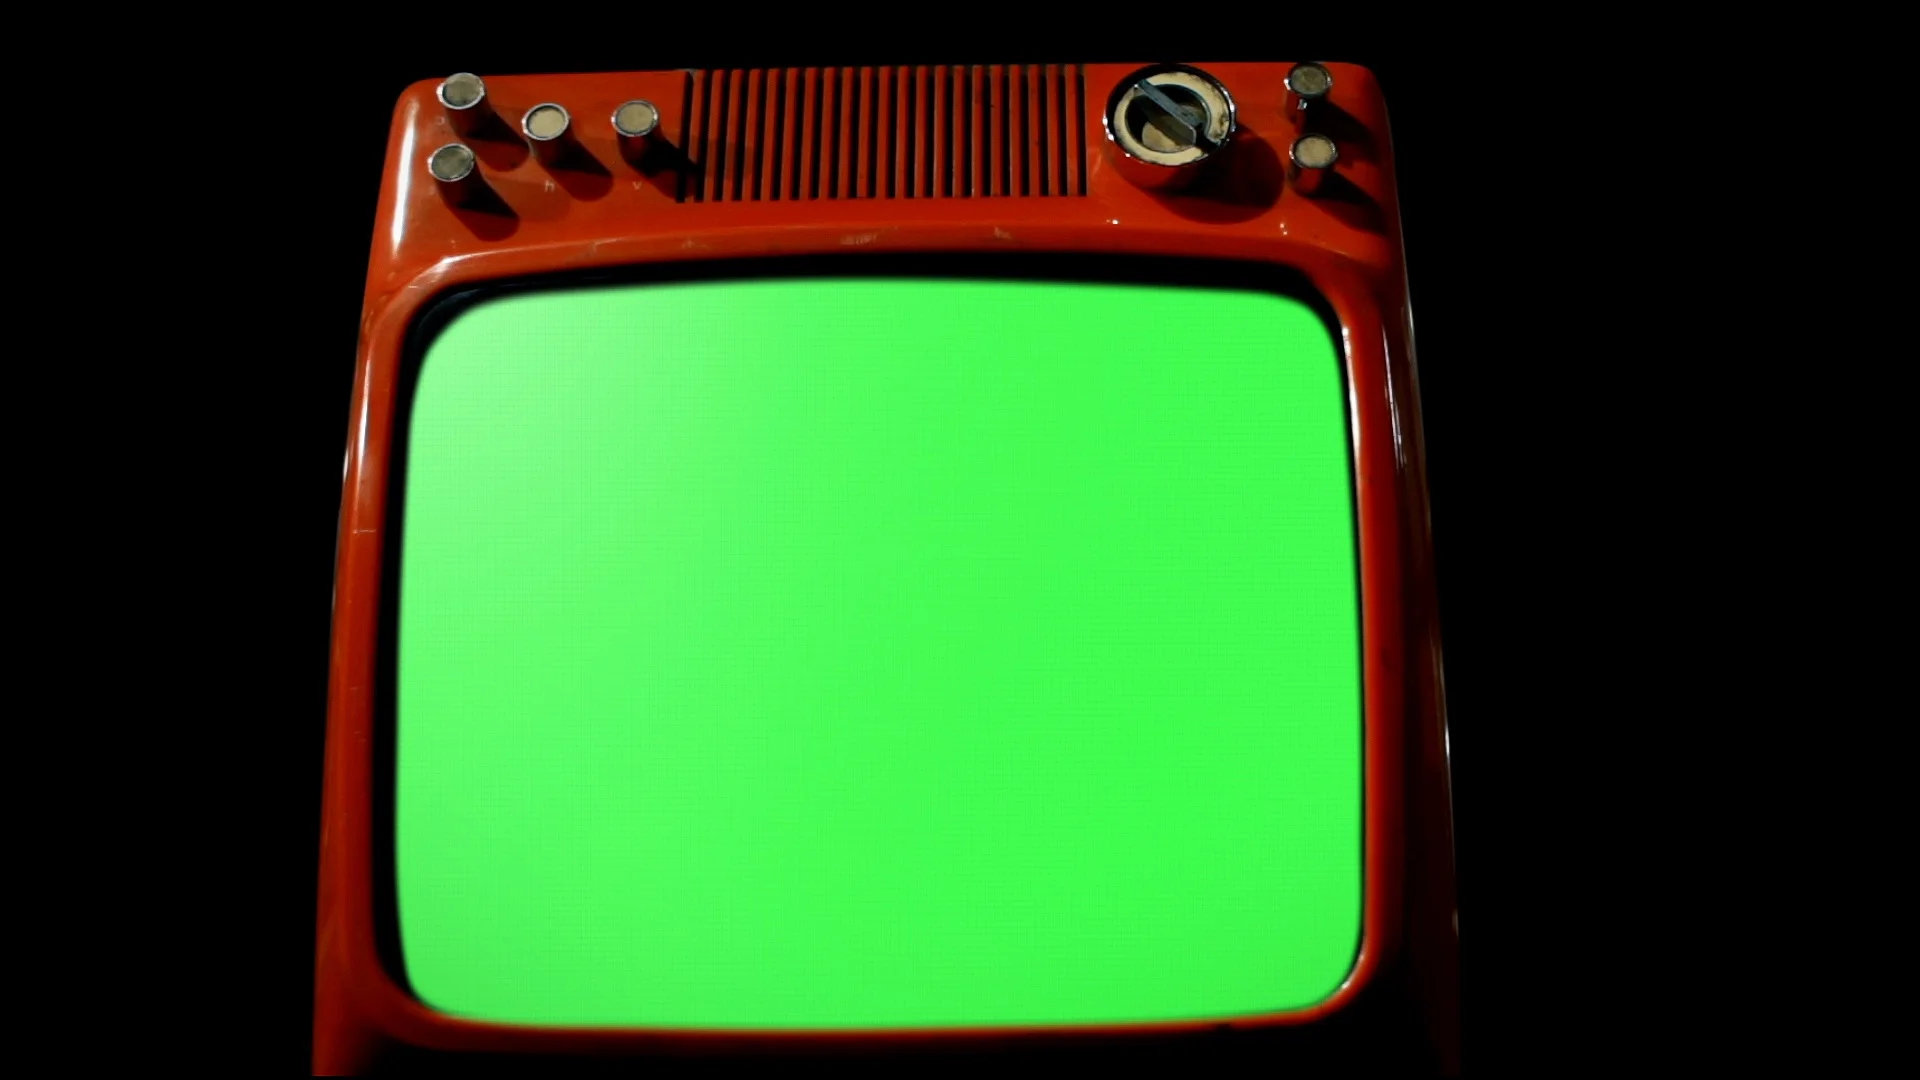 TV cũ màu đỏ với màn hình xanh là một trong những mẩu TV độc đáo mà bạn chưa bao giờ thấy trước đây. Xem hình ảnh này để trở lại quá khứ và tận hưởng những giây phút thư giãn với những trào lưu giải trí của những năm